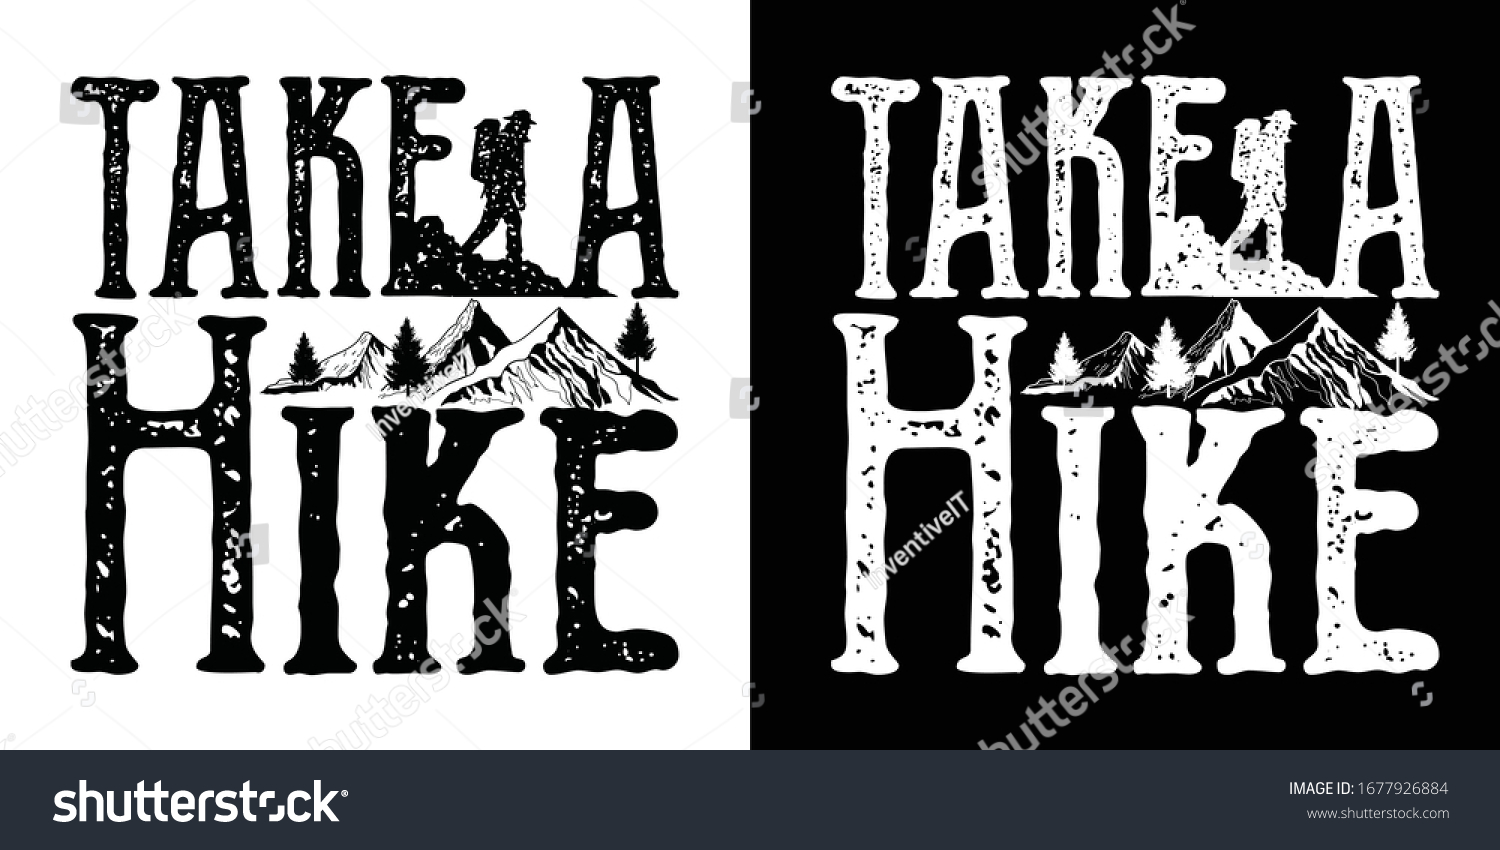 take-hike-printable-vector-illustration-1677926884-shutterstock